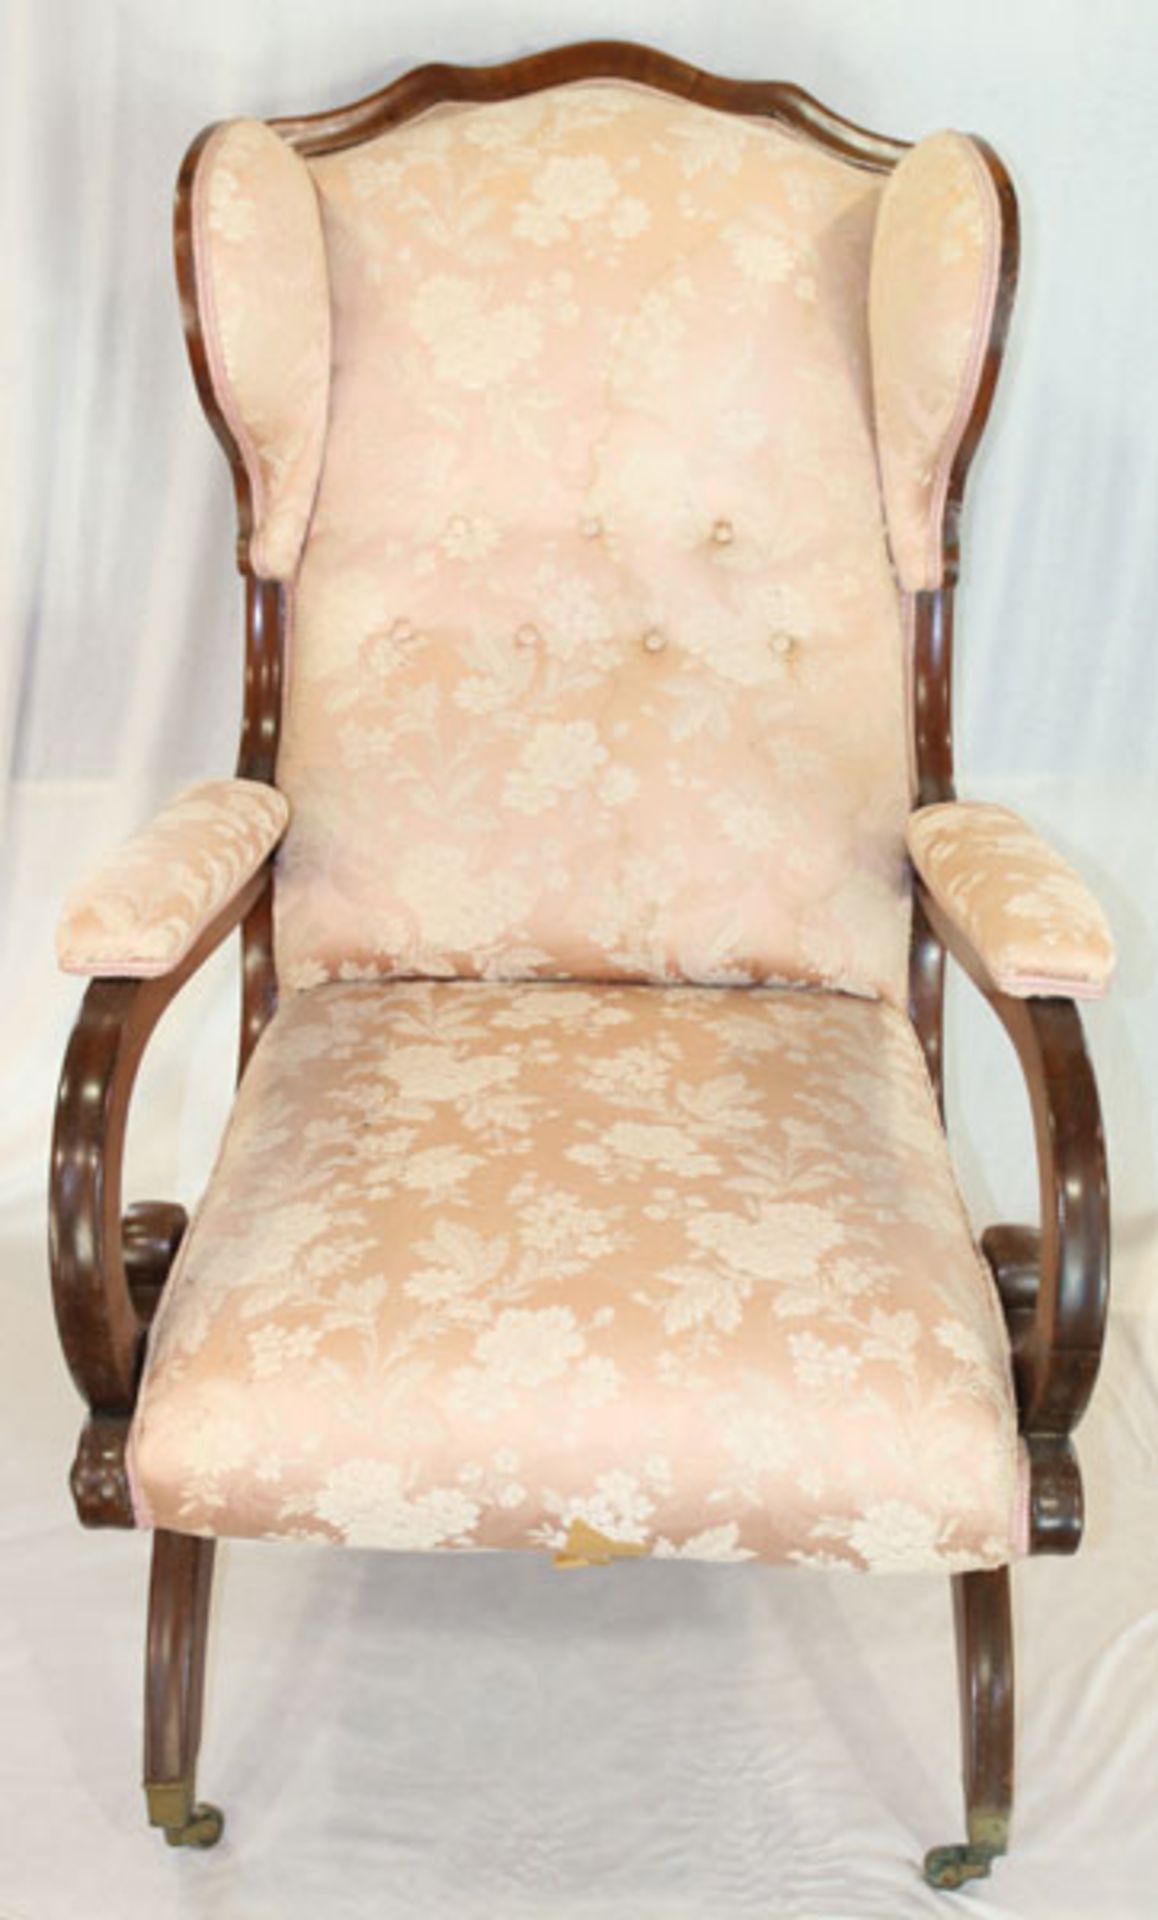 Ohrenbacken-Armlehnstuhl auf geschwungenen Beinen, Sitz, Lehne und Armlehnen gepolstert und rosé/